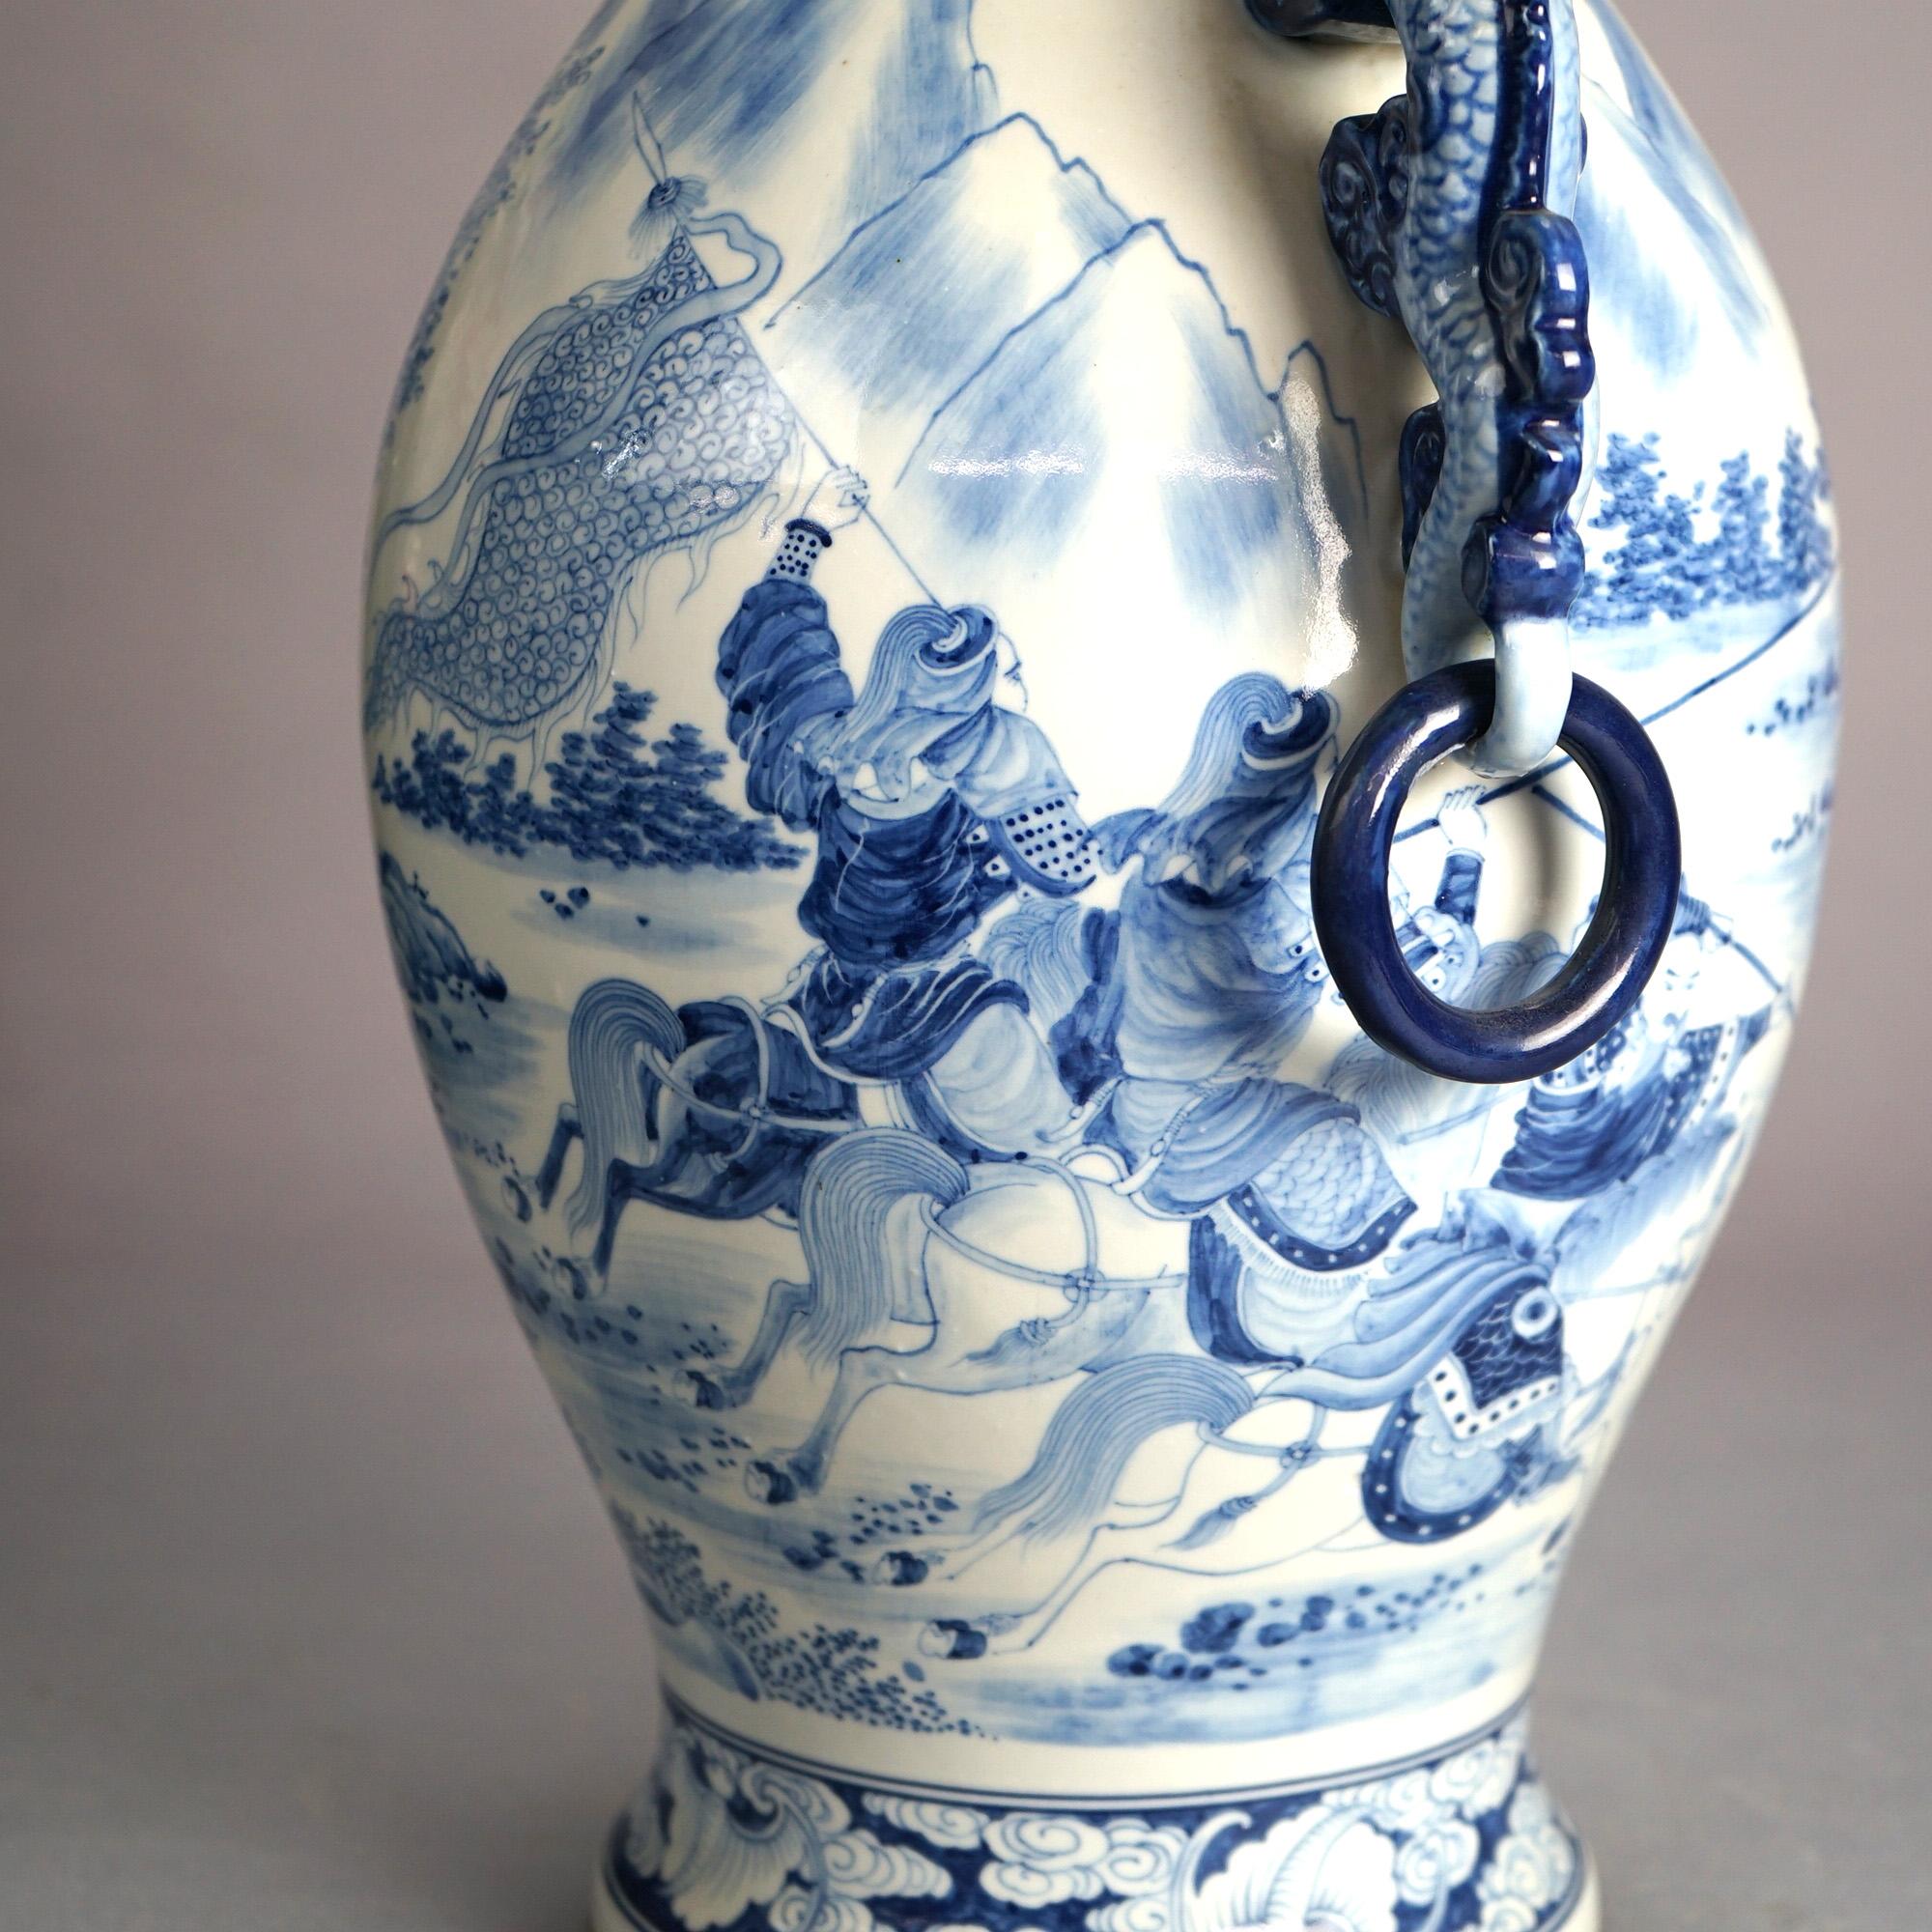 Grand vase chinois en porcelaine bleu et blanc avec anses en forme de dragon figuratif, guerrier à cheval et marque de Whiting 20e siècle

Dimensions : 16,75''H x 12''L x 8,5''P